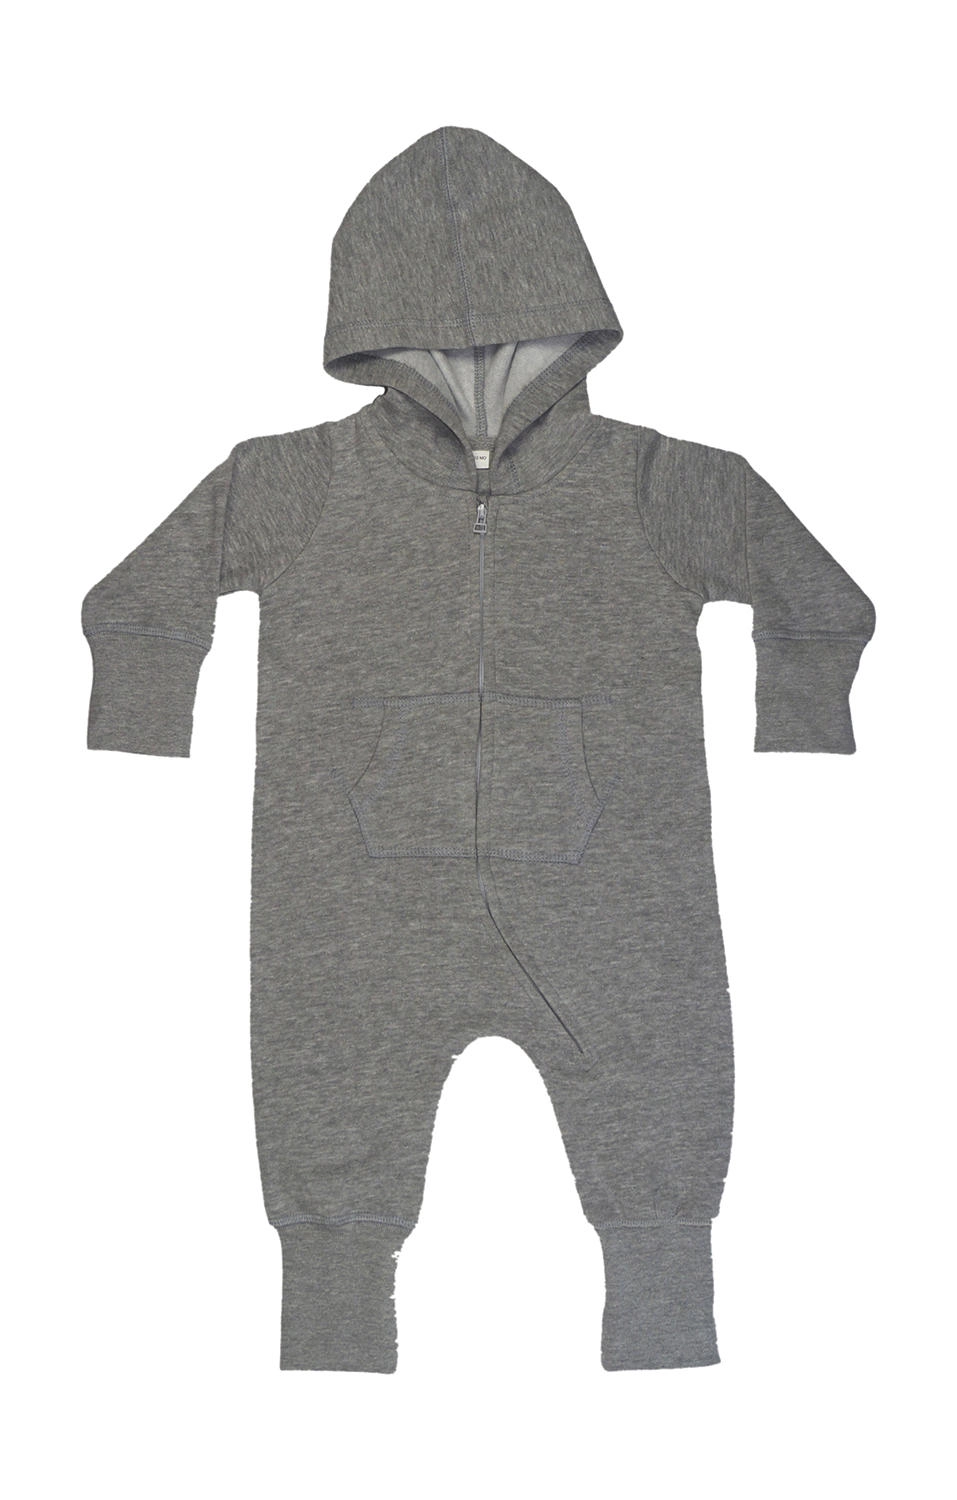 Baby All-in-One zum Besticken und Bedrucken in der Farbe Washed Grey Melange mit Ihren Logo, Schriftzug oder Motiv.